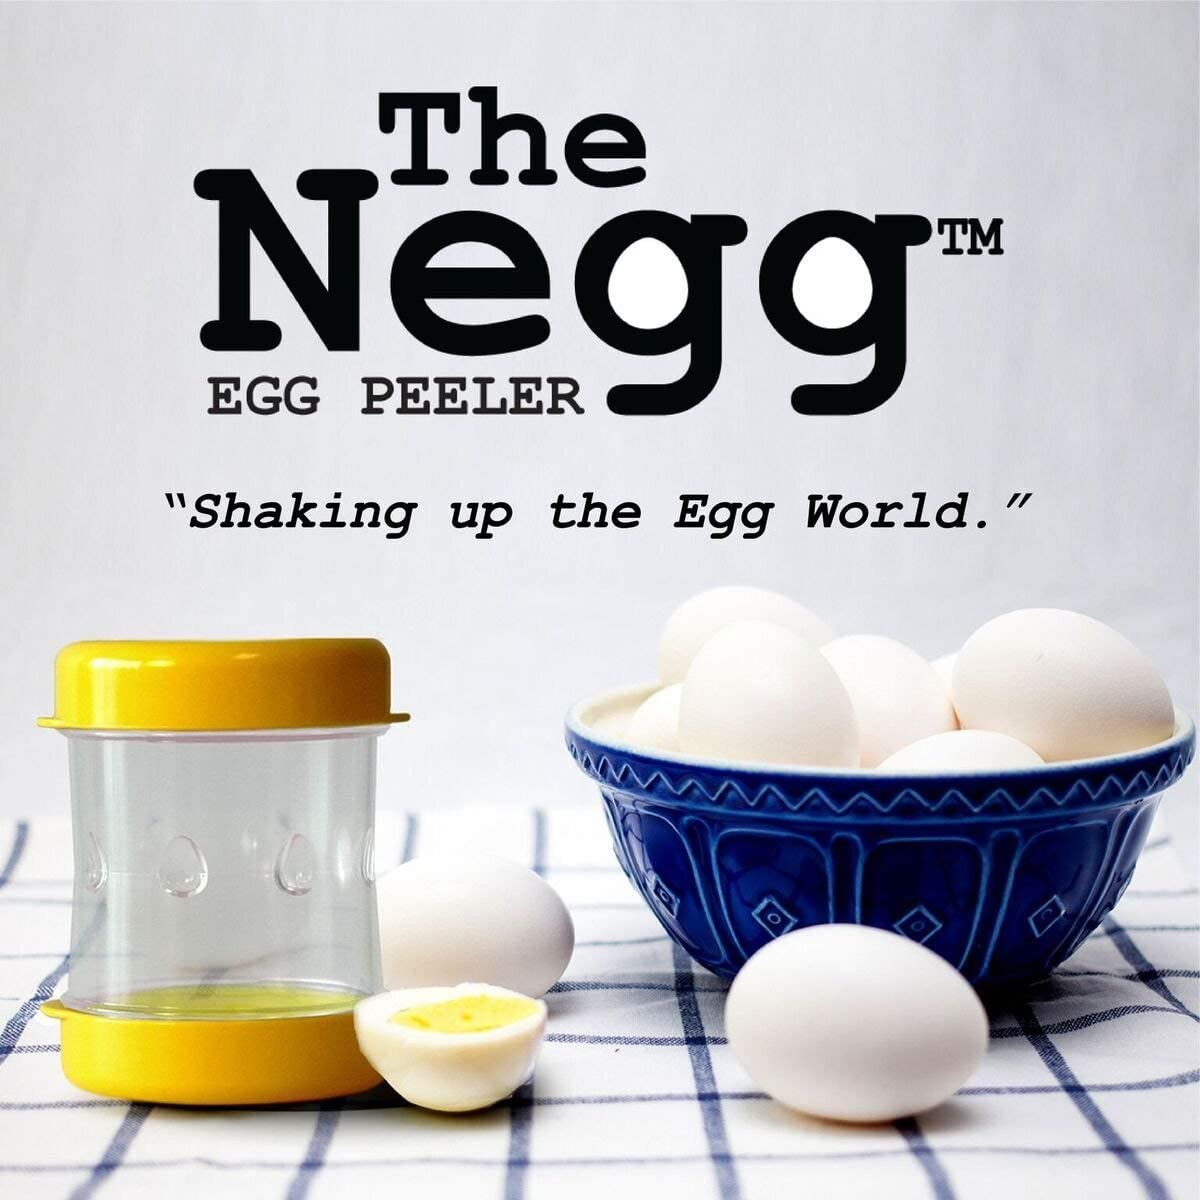 The Negg Easy Hard Boiled Egg Peeler